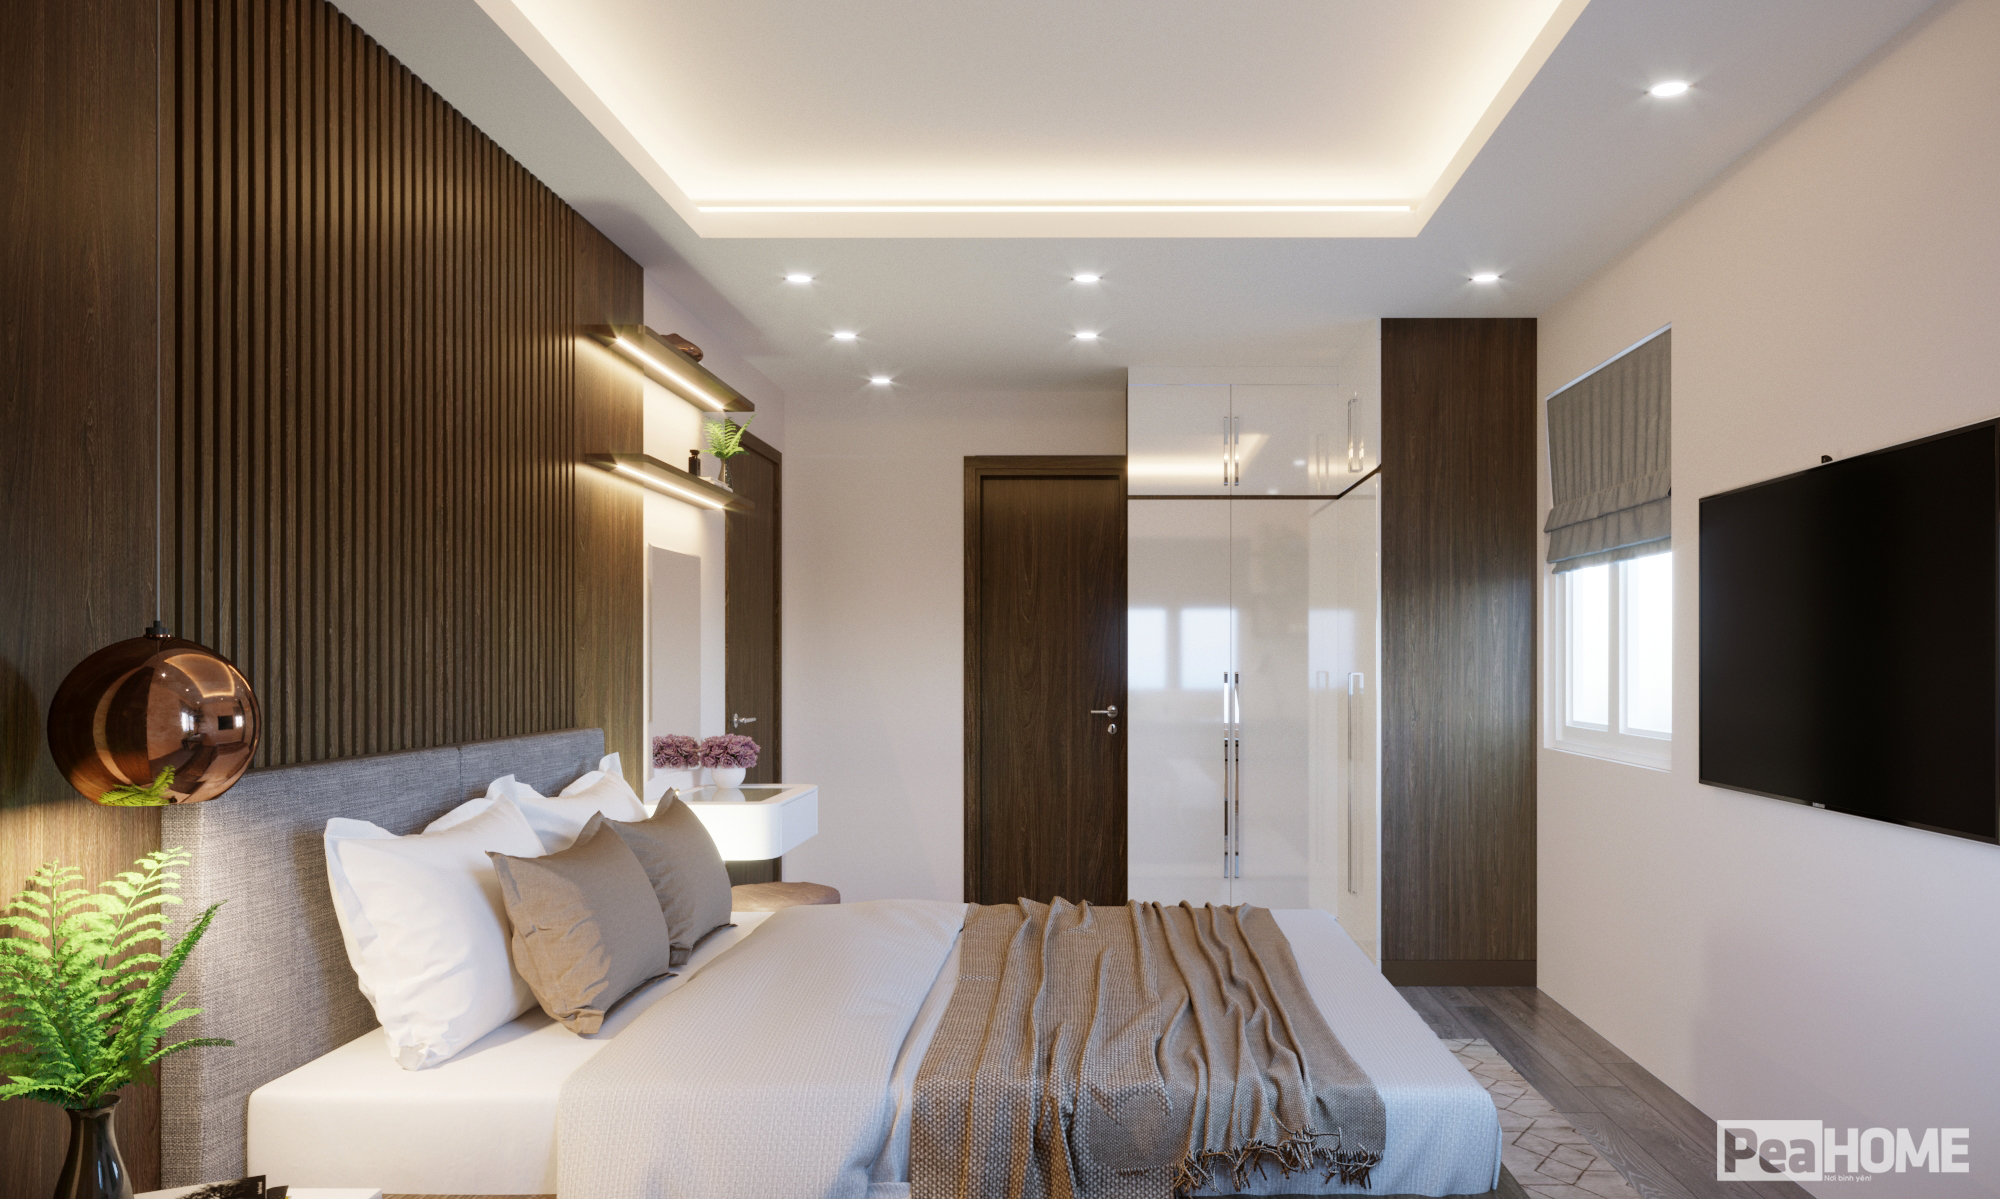 thiết kế nội thất chung cư tại Hà Nội NỘI THẤT CHUNG CƯ  14 1559896498